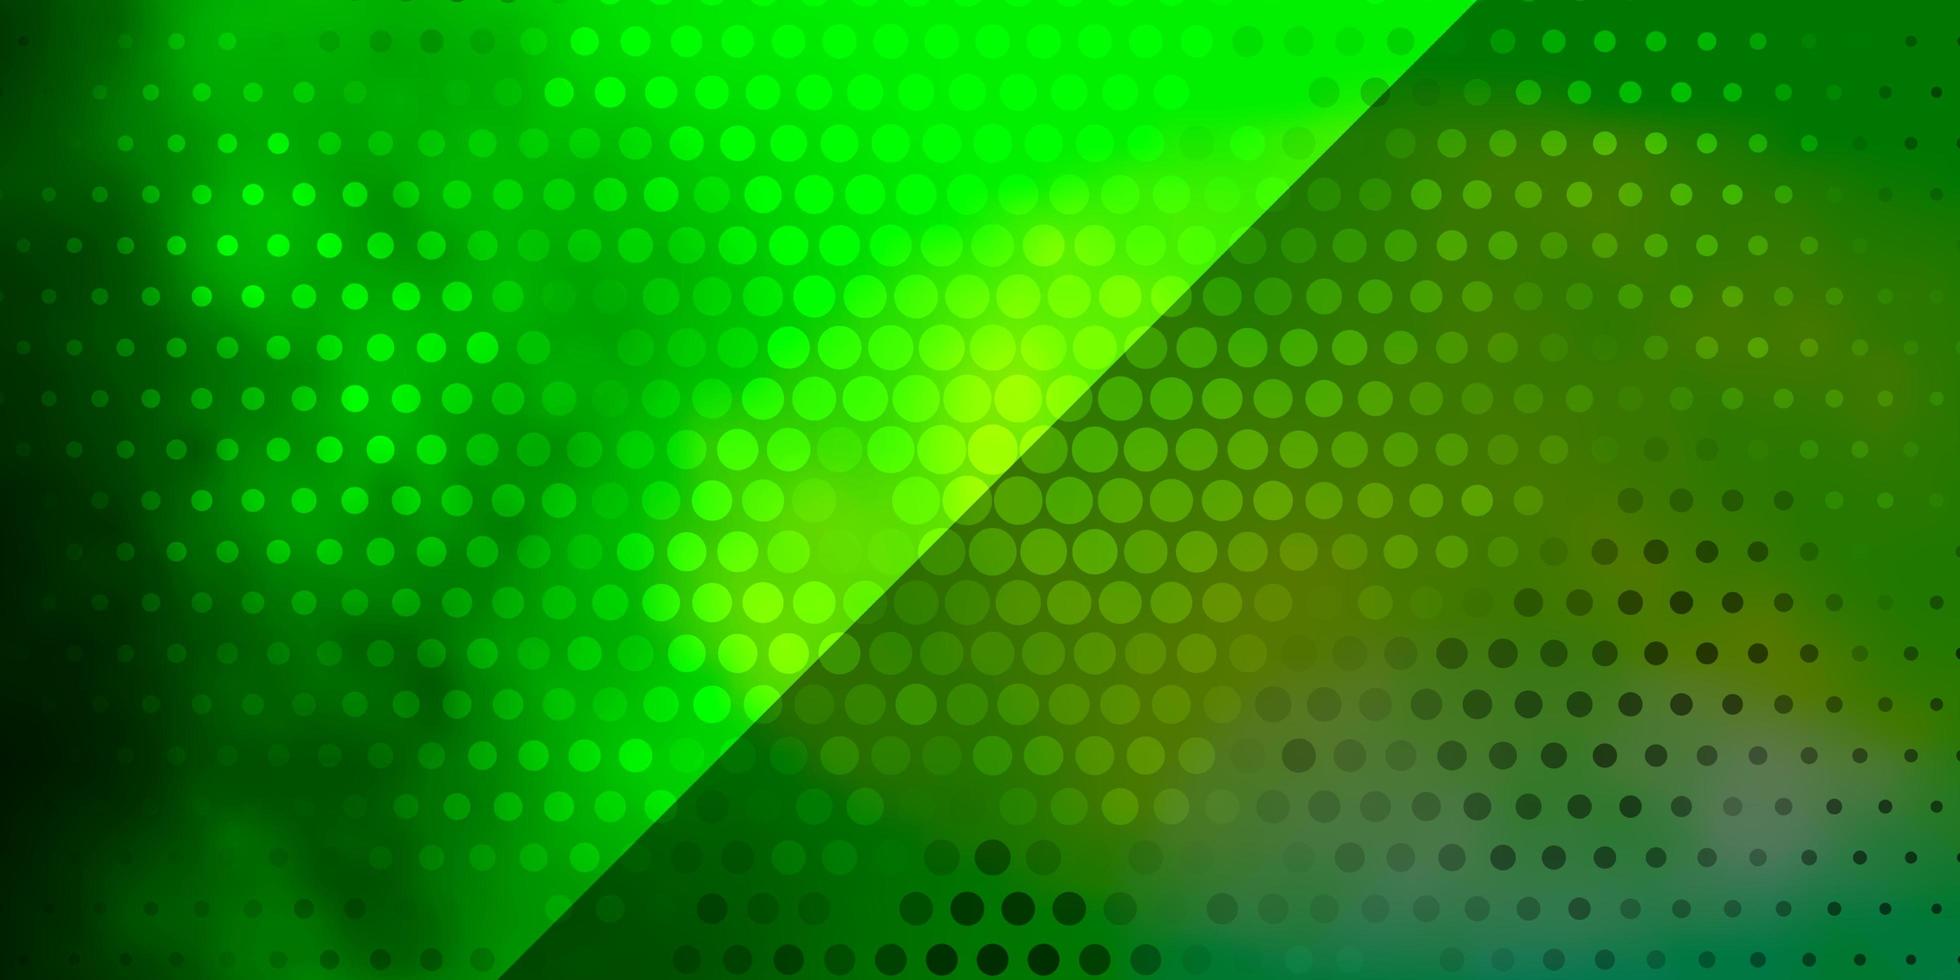 textura de vetor verde claro com círculos.